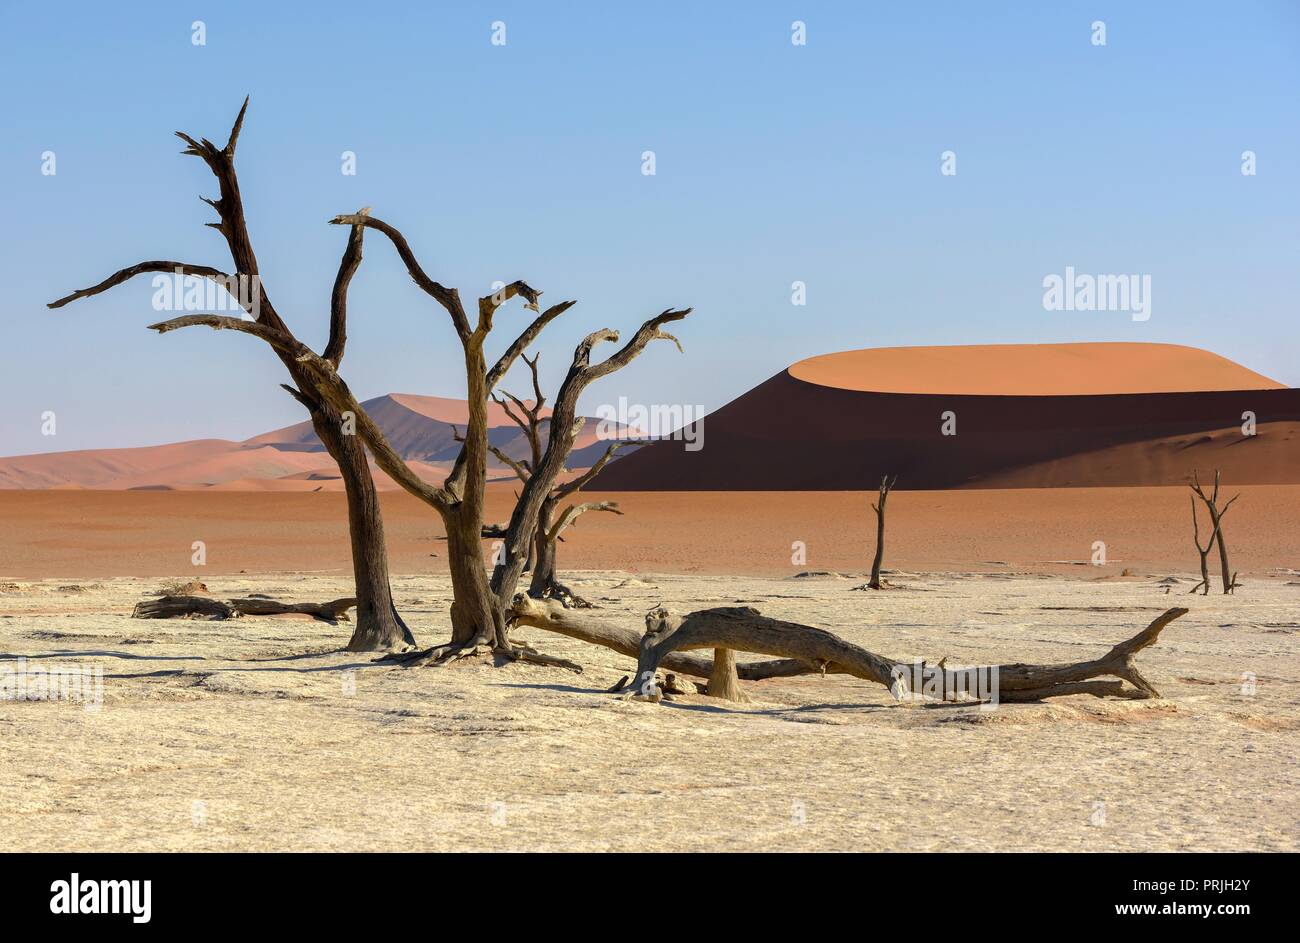 Morto alberi camelthorn (Acacia erioloba) in Deadvlei, Namib Desert, Namib-Naukluft National Park, Namibia Foto Stock